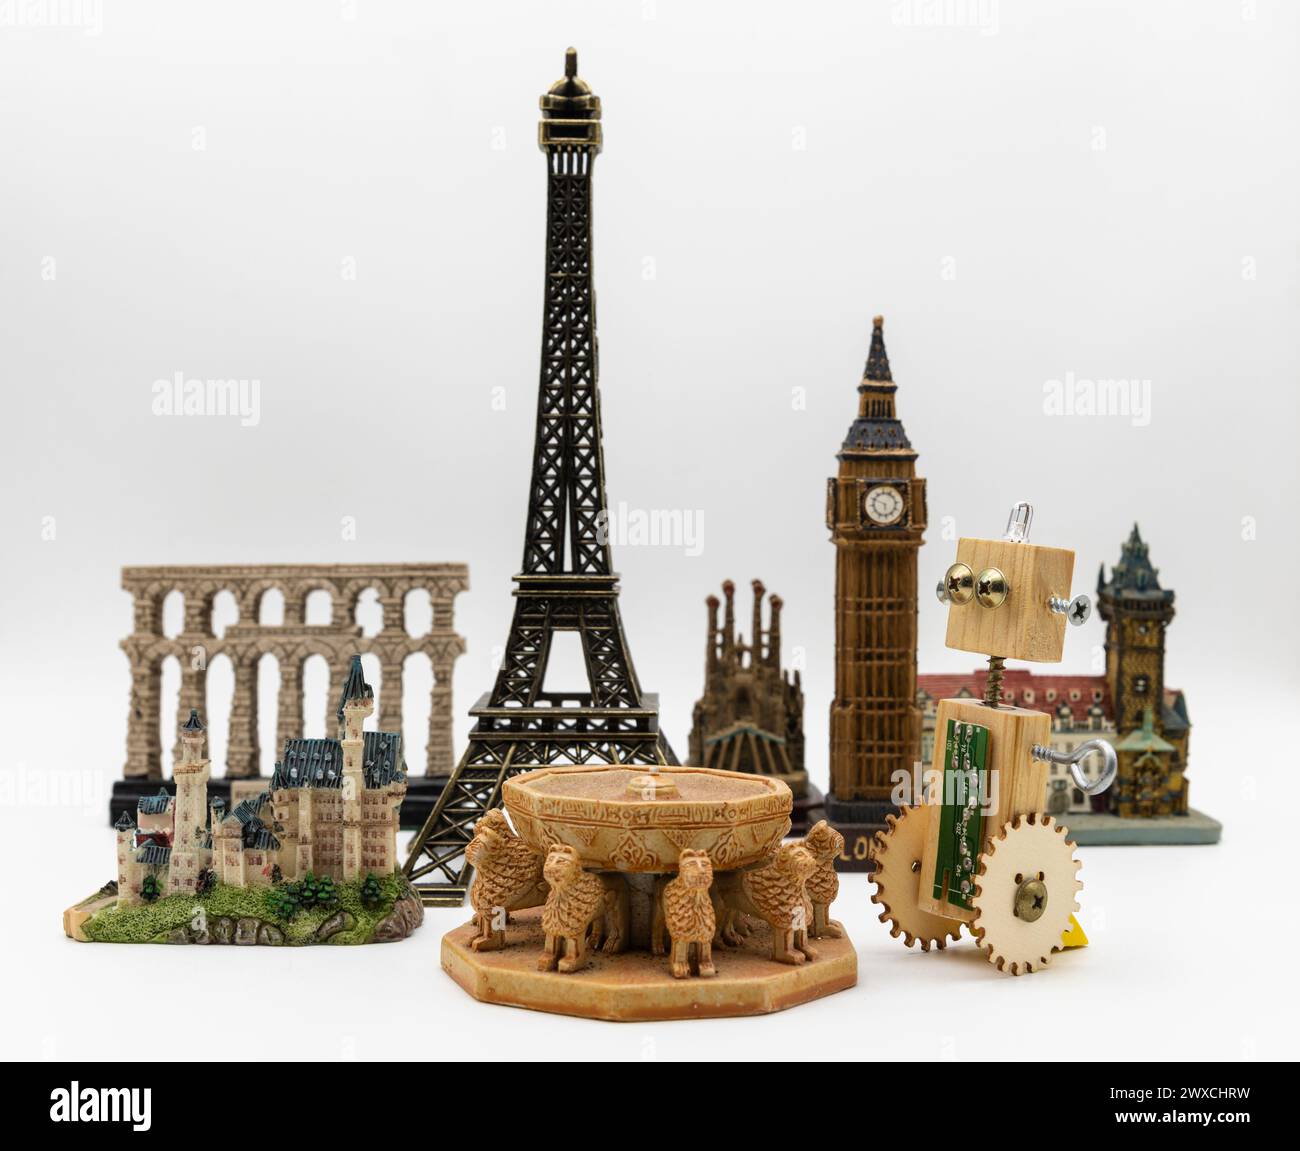 Roboter artesano de madera junto a varios monumentos del mundo como la torre Eiffel, Patio de los Leones de la Alhambra o el Big Ben Stockfoto